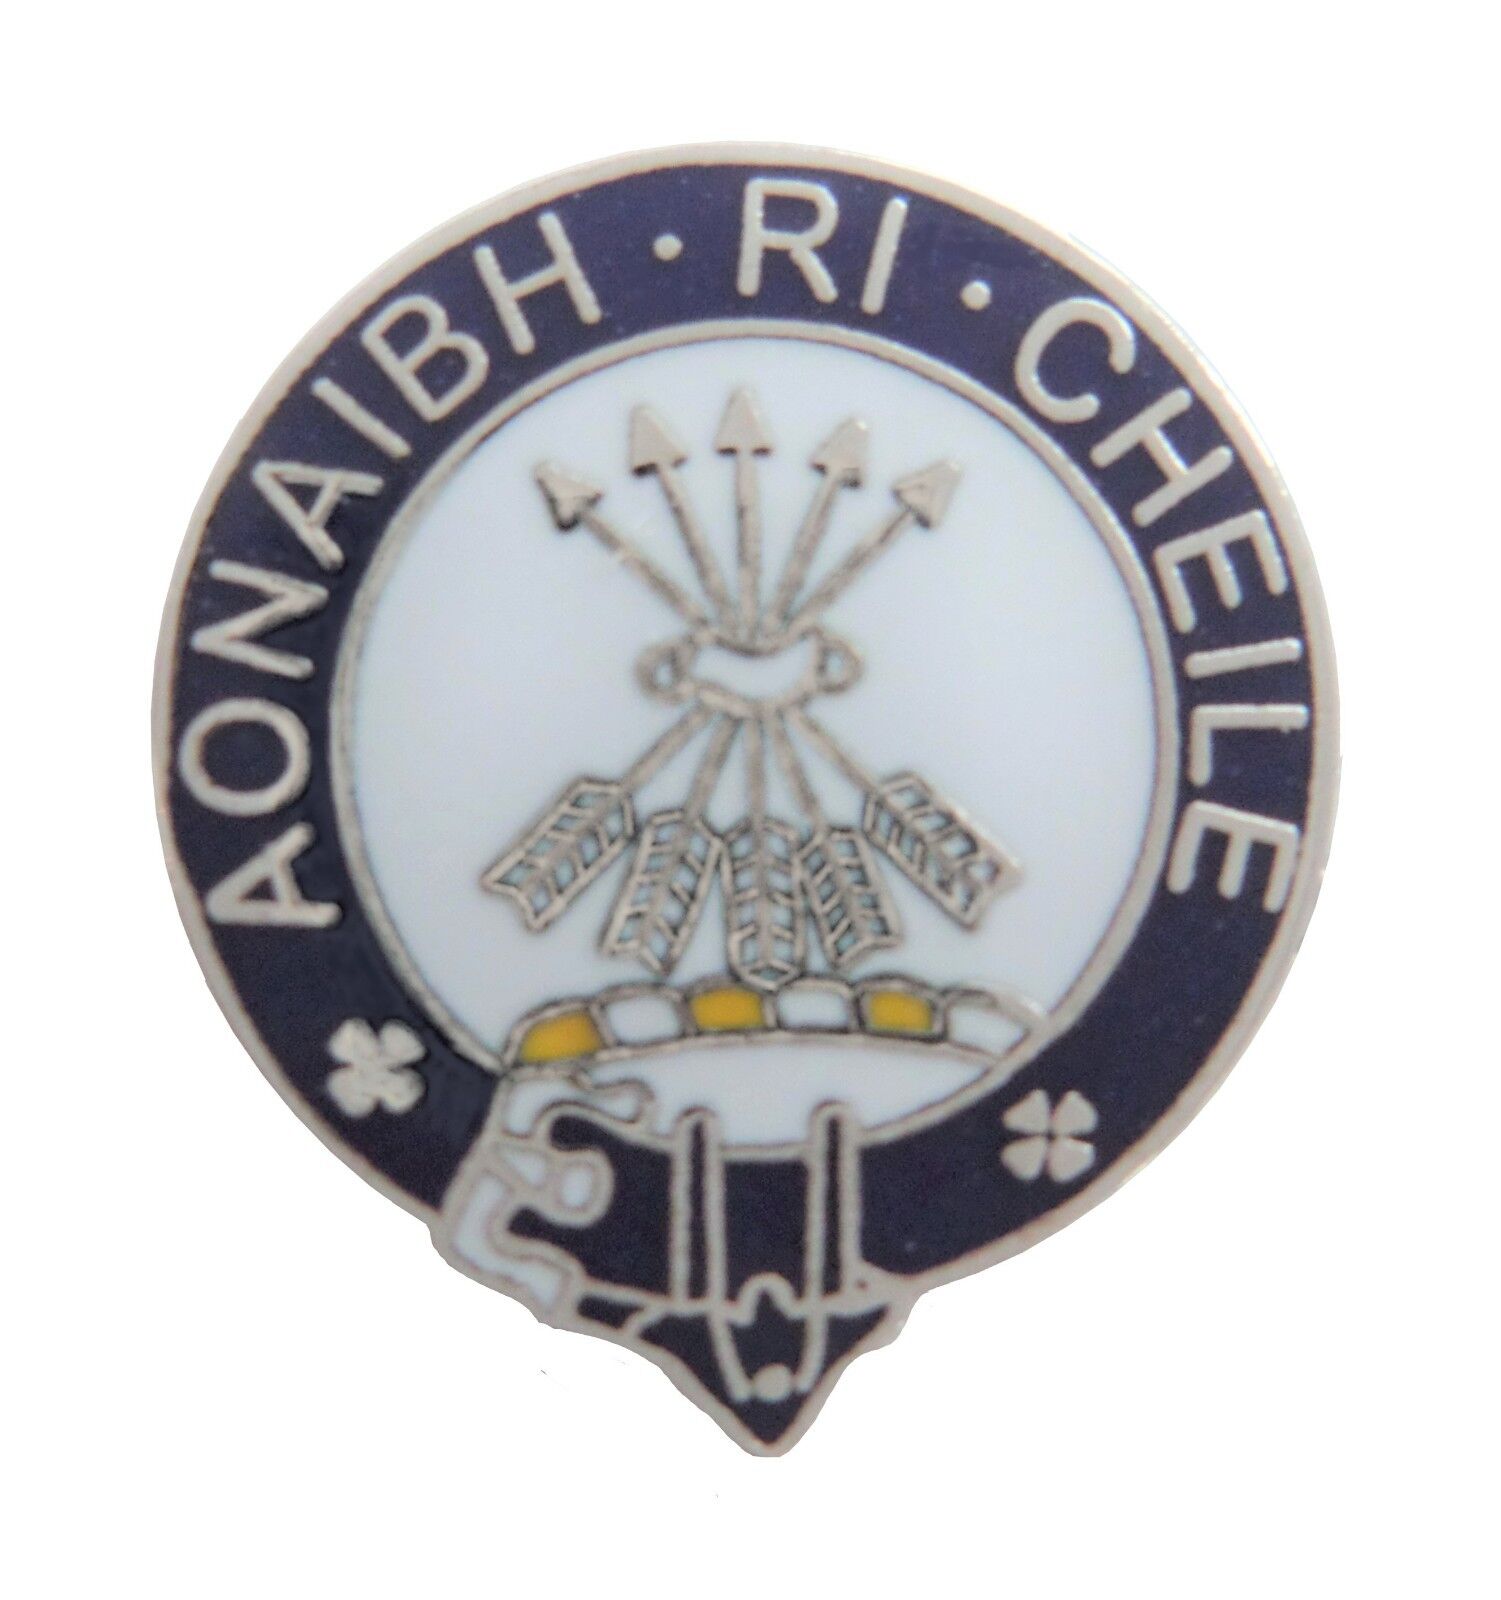 Cameron Clan Scotland Scottish Name Pin Badge - Let Us Unite